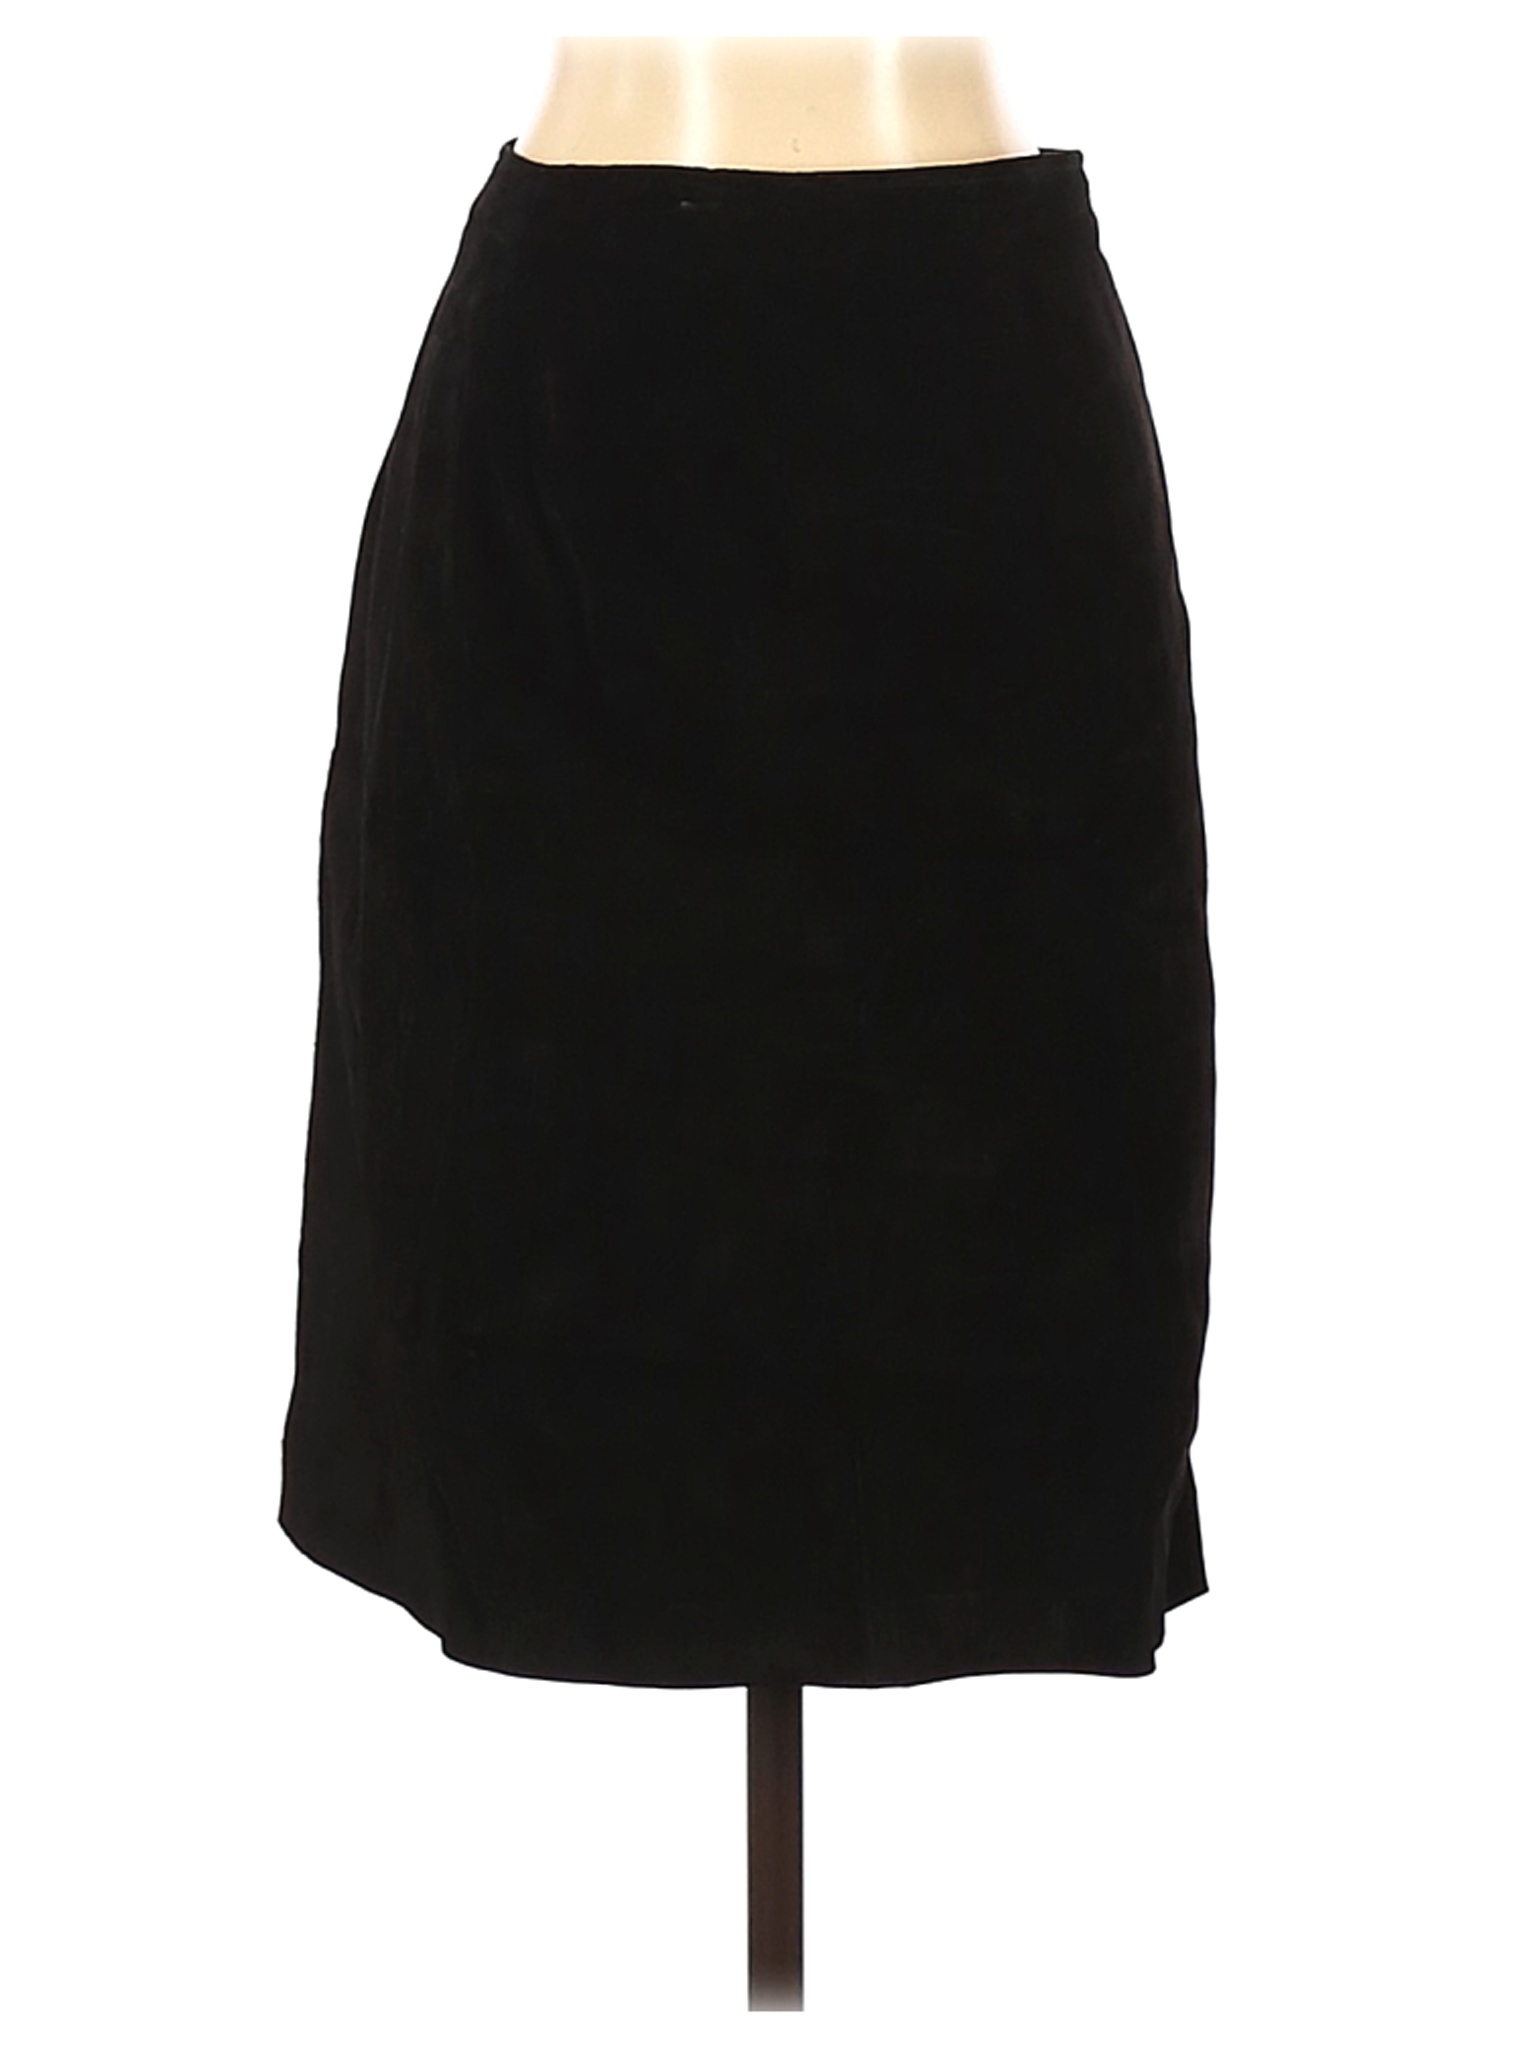 Assorted Brands Women Black Leather Skirt 6 | eBay